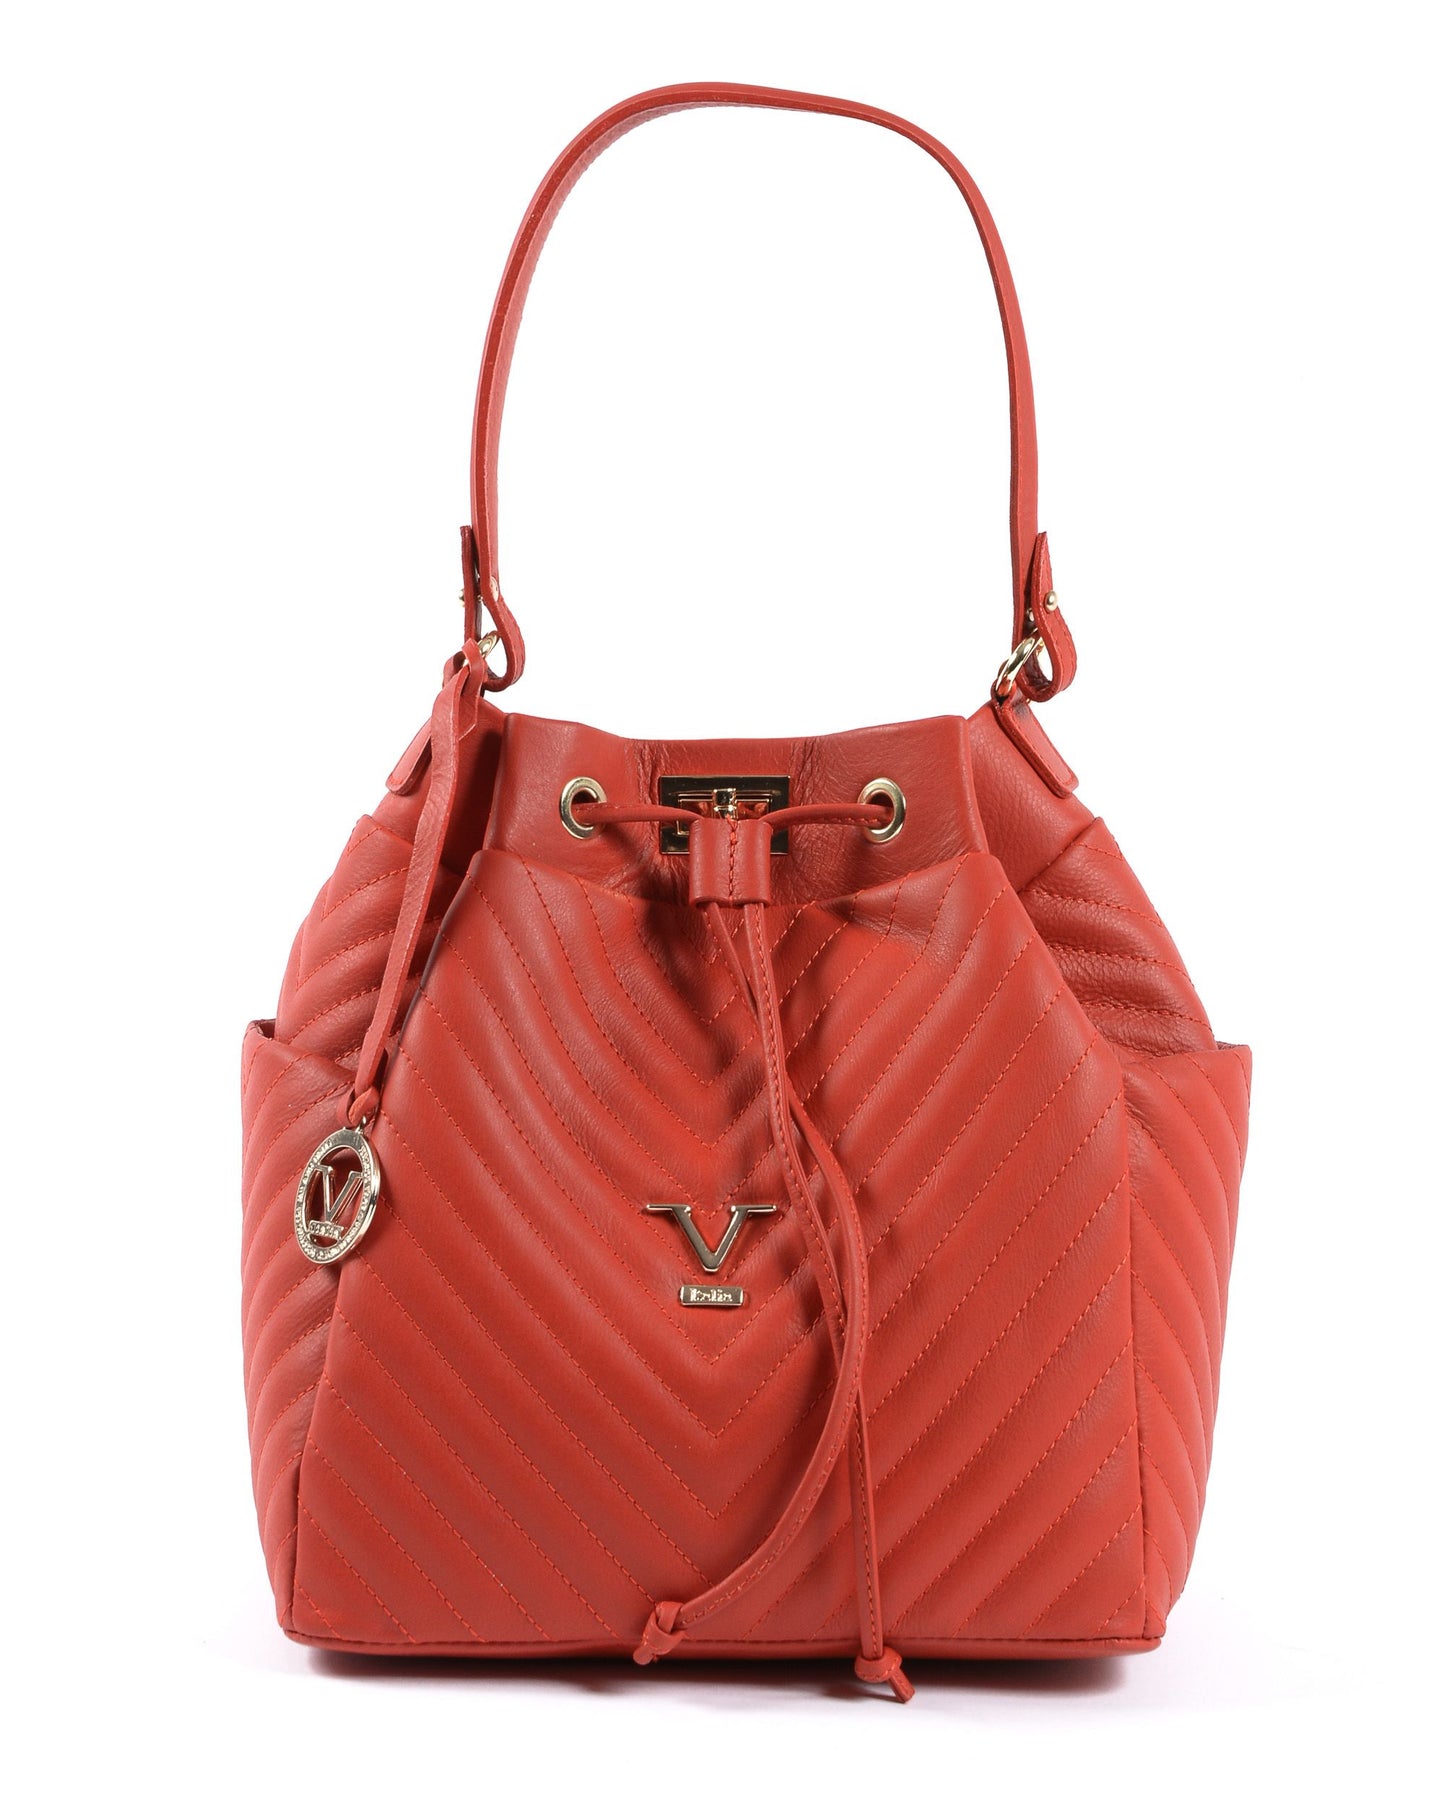 19V69 Italia Womens Handbag Red BH10272 52 SAUVAGE ROSSO FUOCO